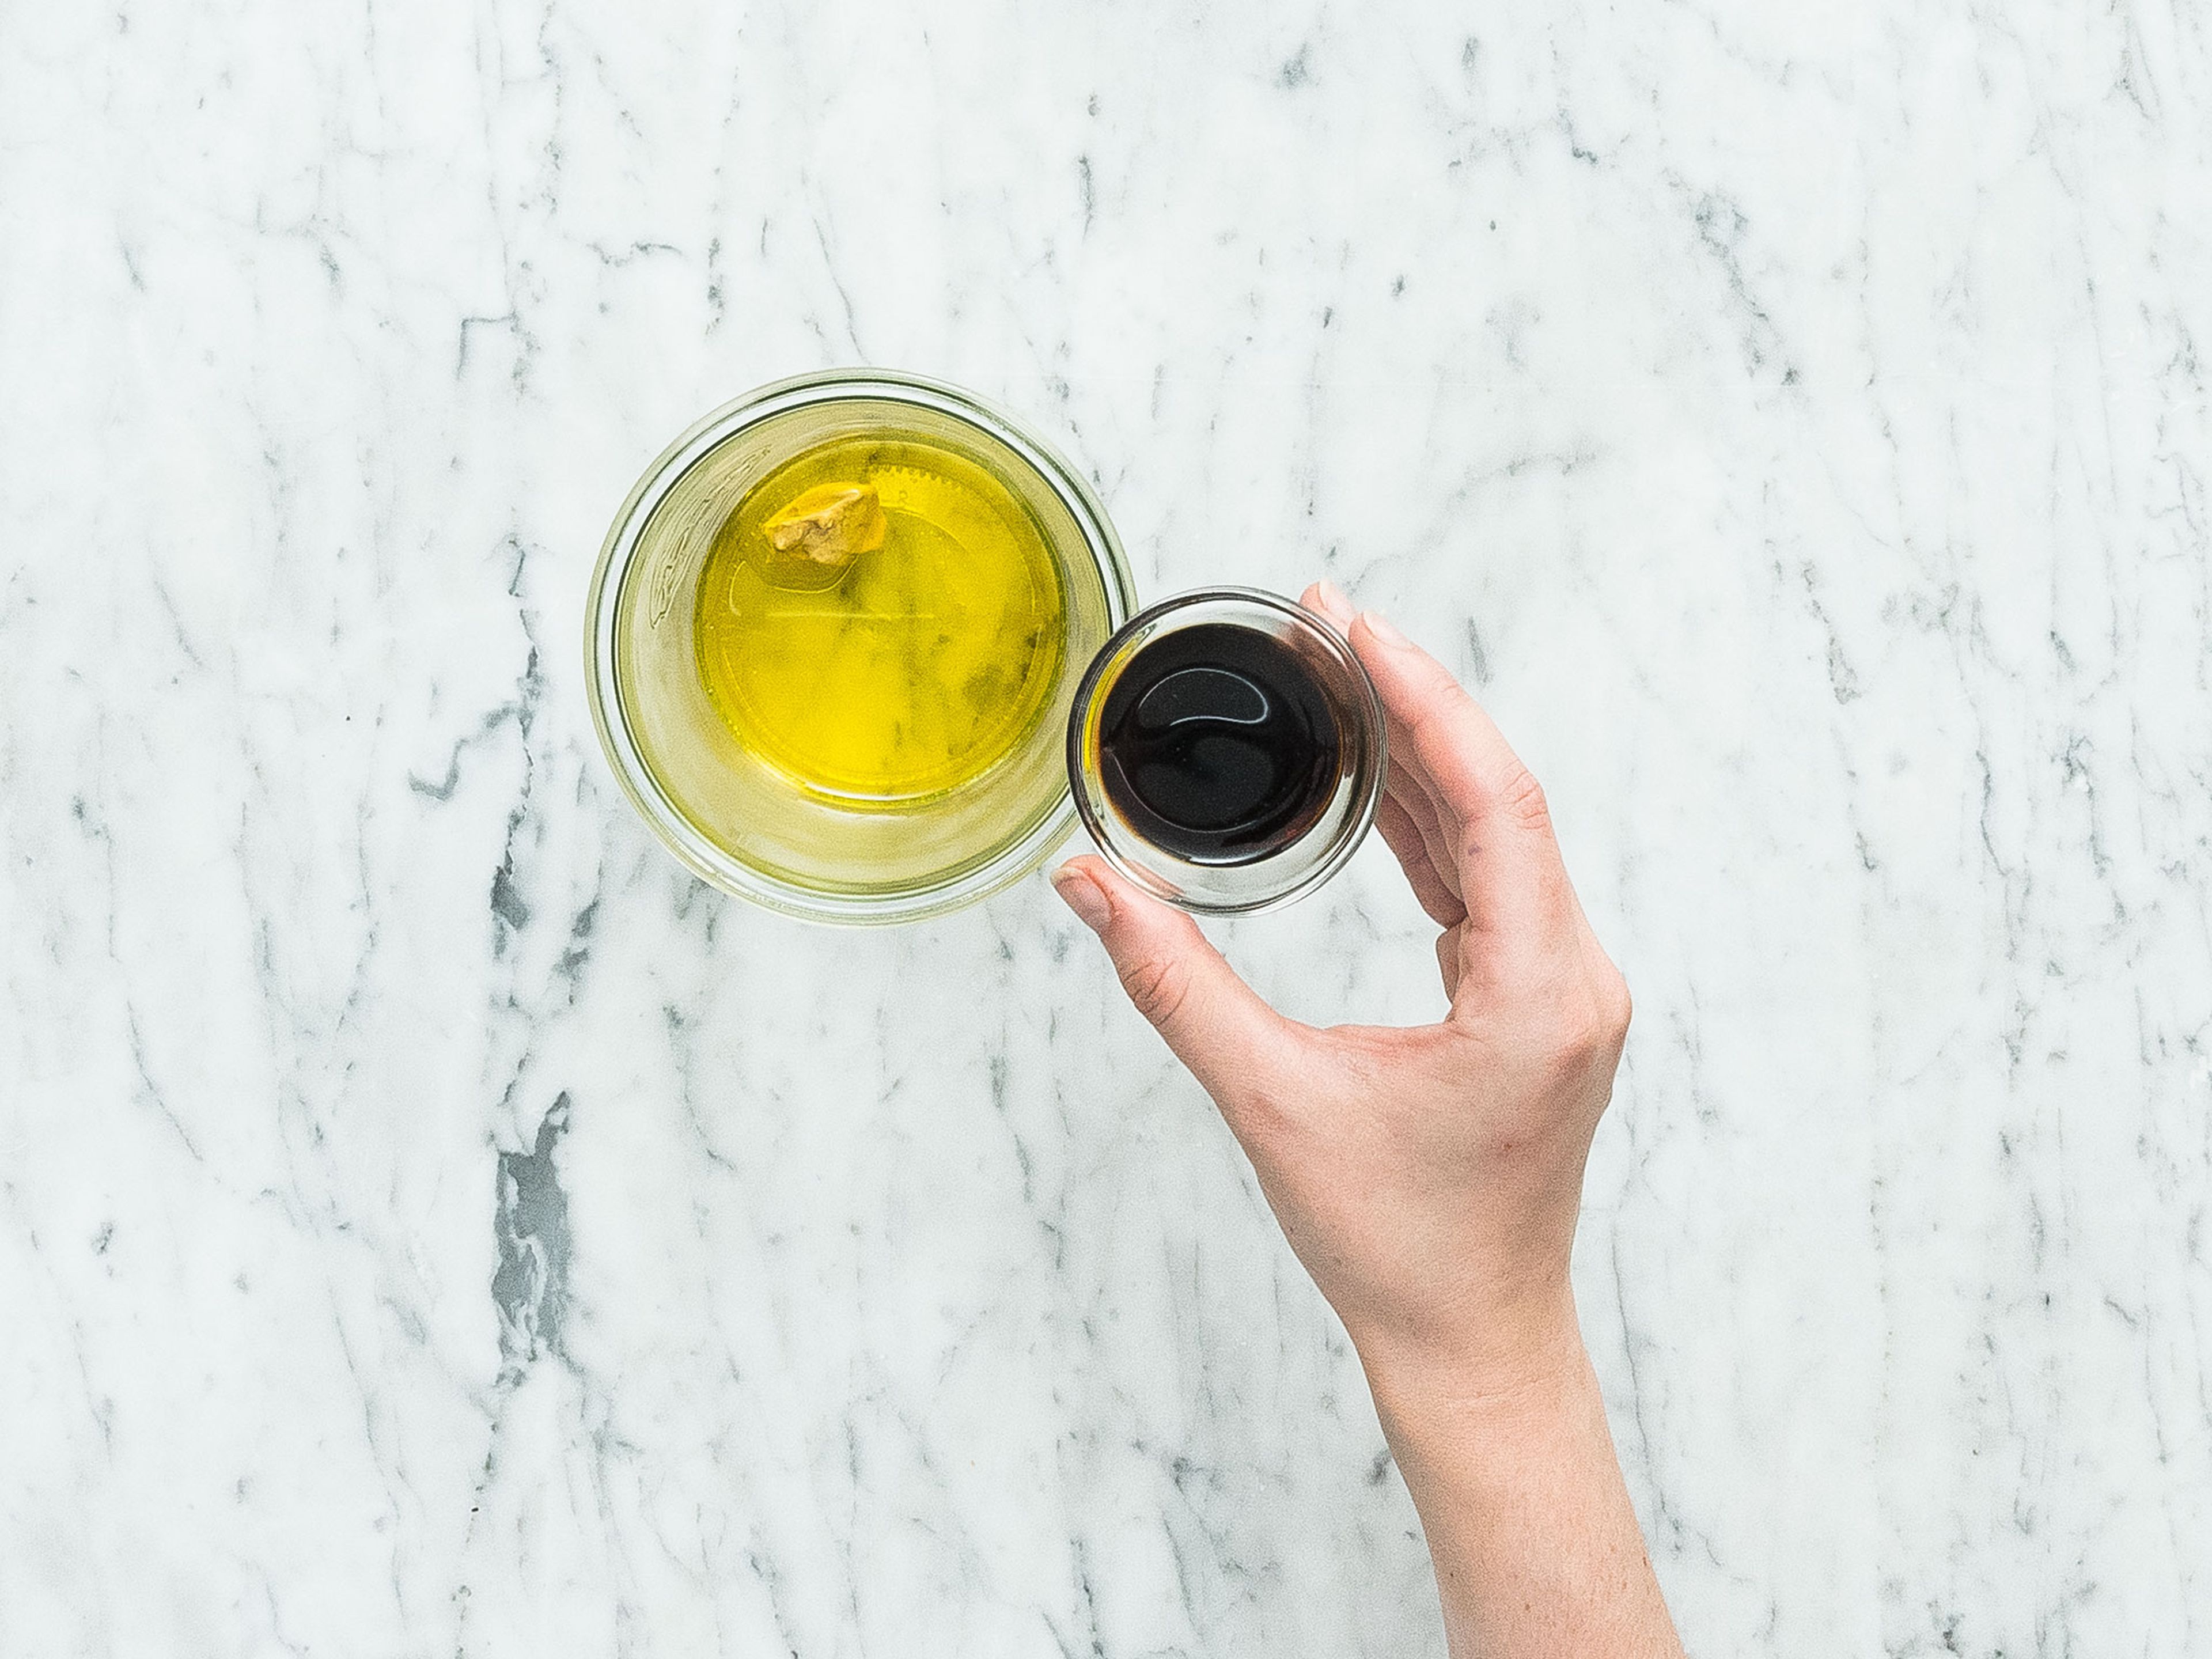 Für die Vinaigrette Weißweinessig, Balsamicoessig, Senf und Olivenöl direkt im Glas vermengen. Mit Salz und Pfeffer abschmecken.